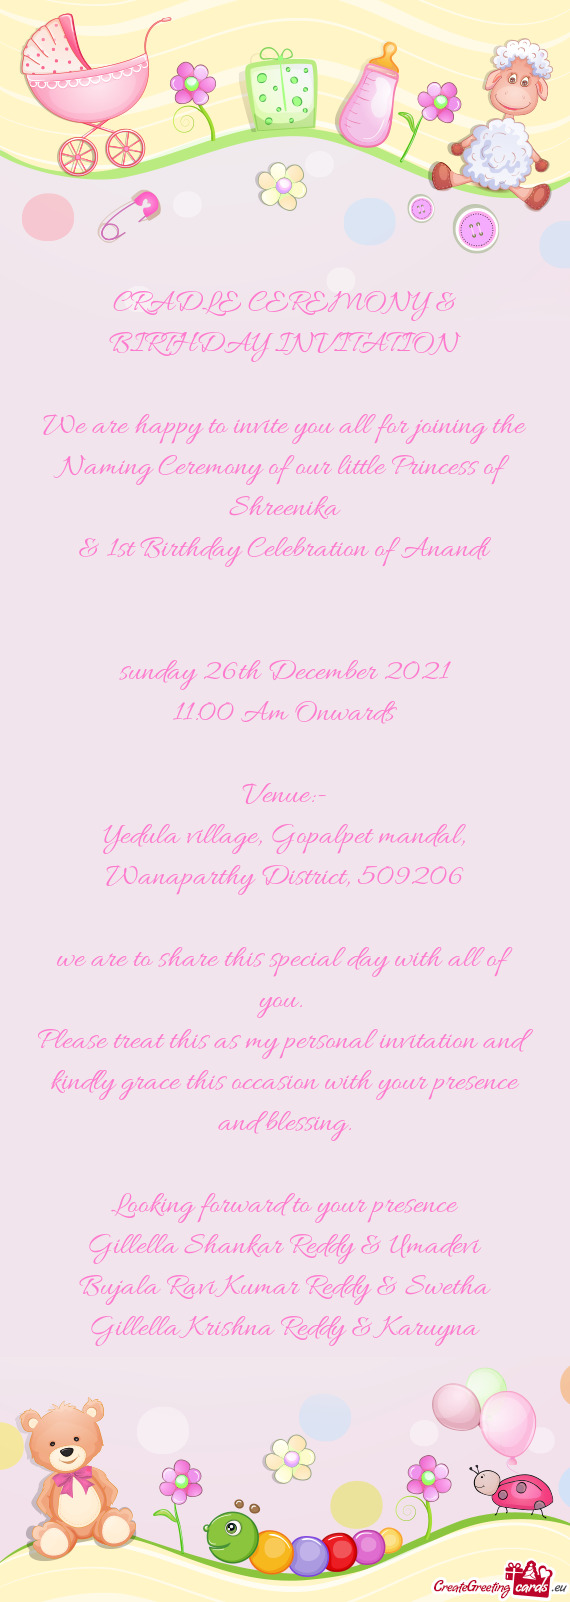 CRADLE CEREMONY & BIRTHDAY INVITATION